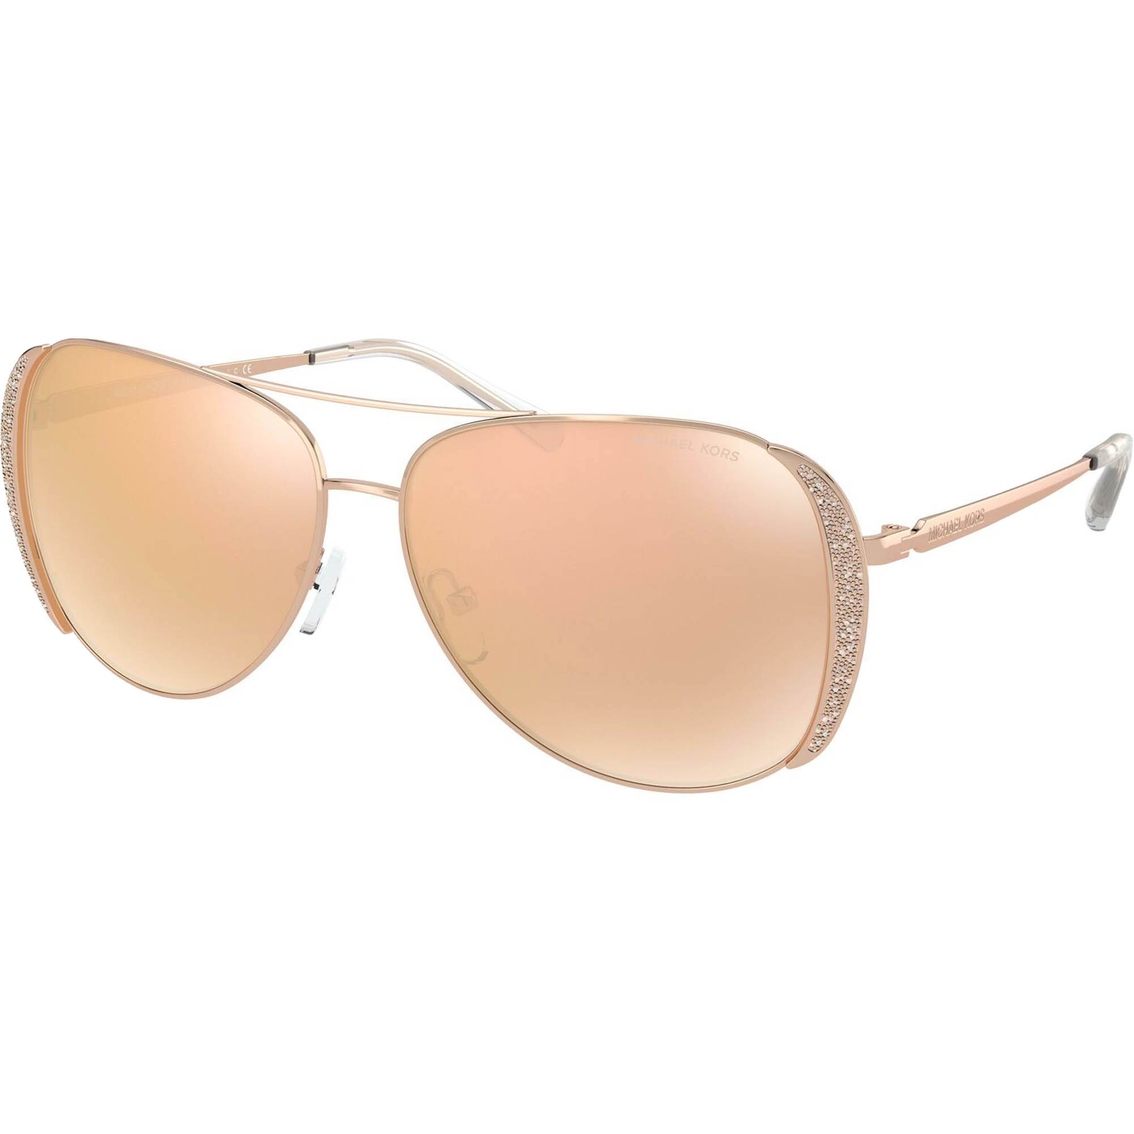 Michael Kors Chelsea Glam Aviator Sunglasses 0mk1082 | Women's ...